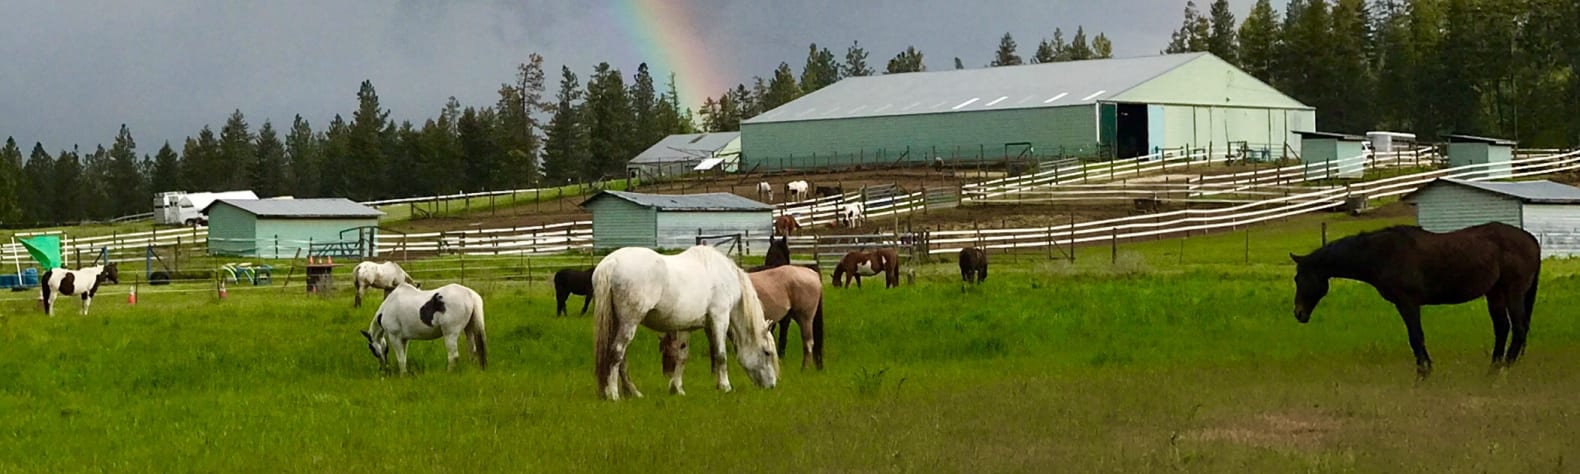 Spokane Western Horse Ranch!